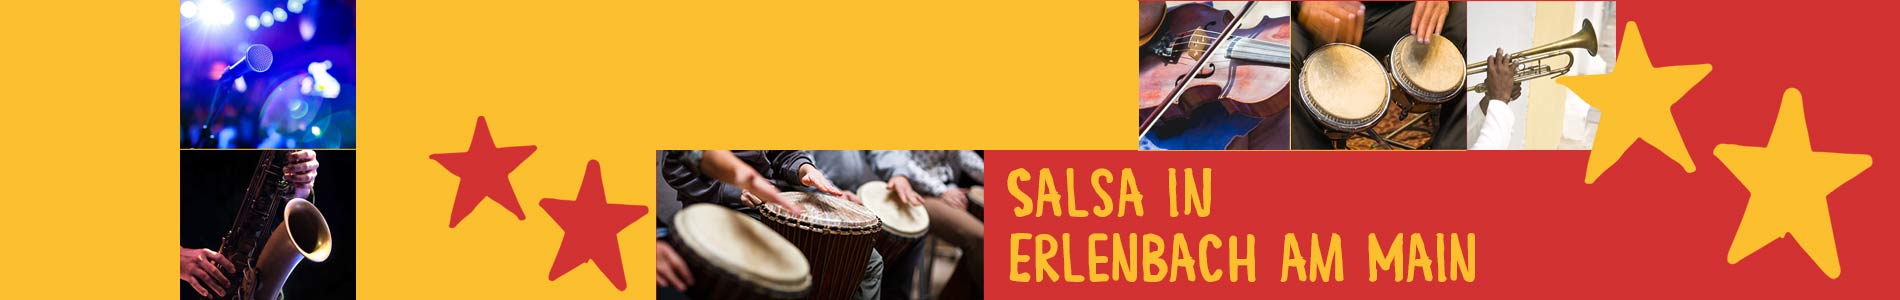 Salsa in Erlenbach am Main – Salsa lernen und tanzen, Tanzkurse, Partys, Veranstaltungen